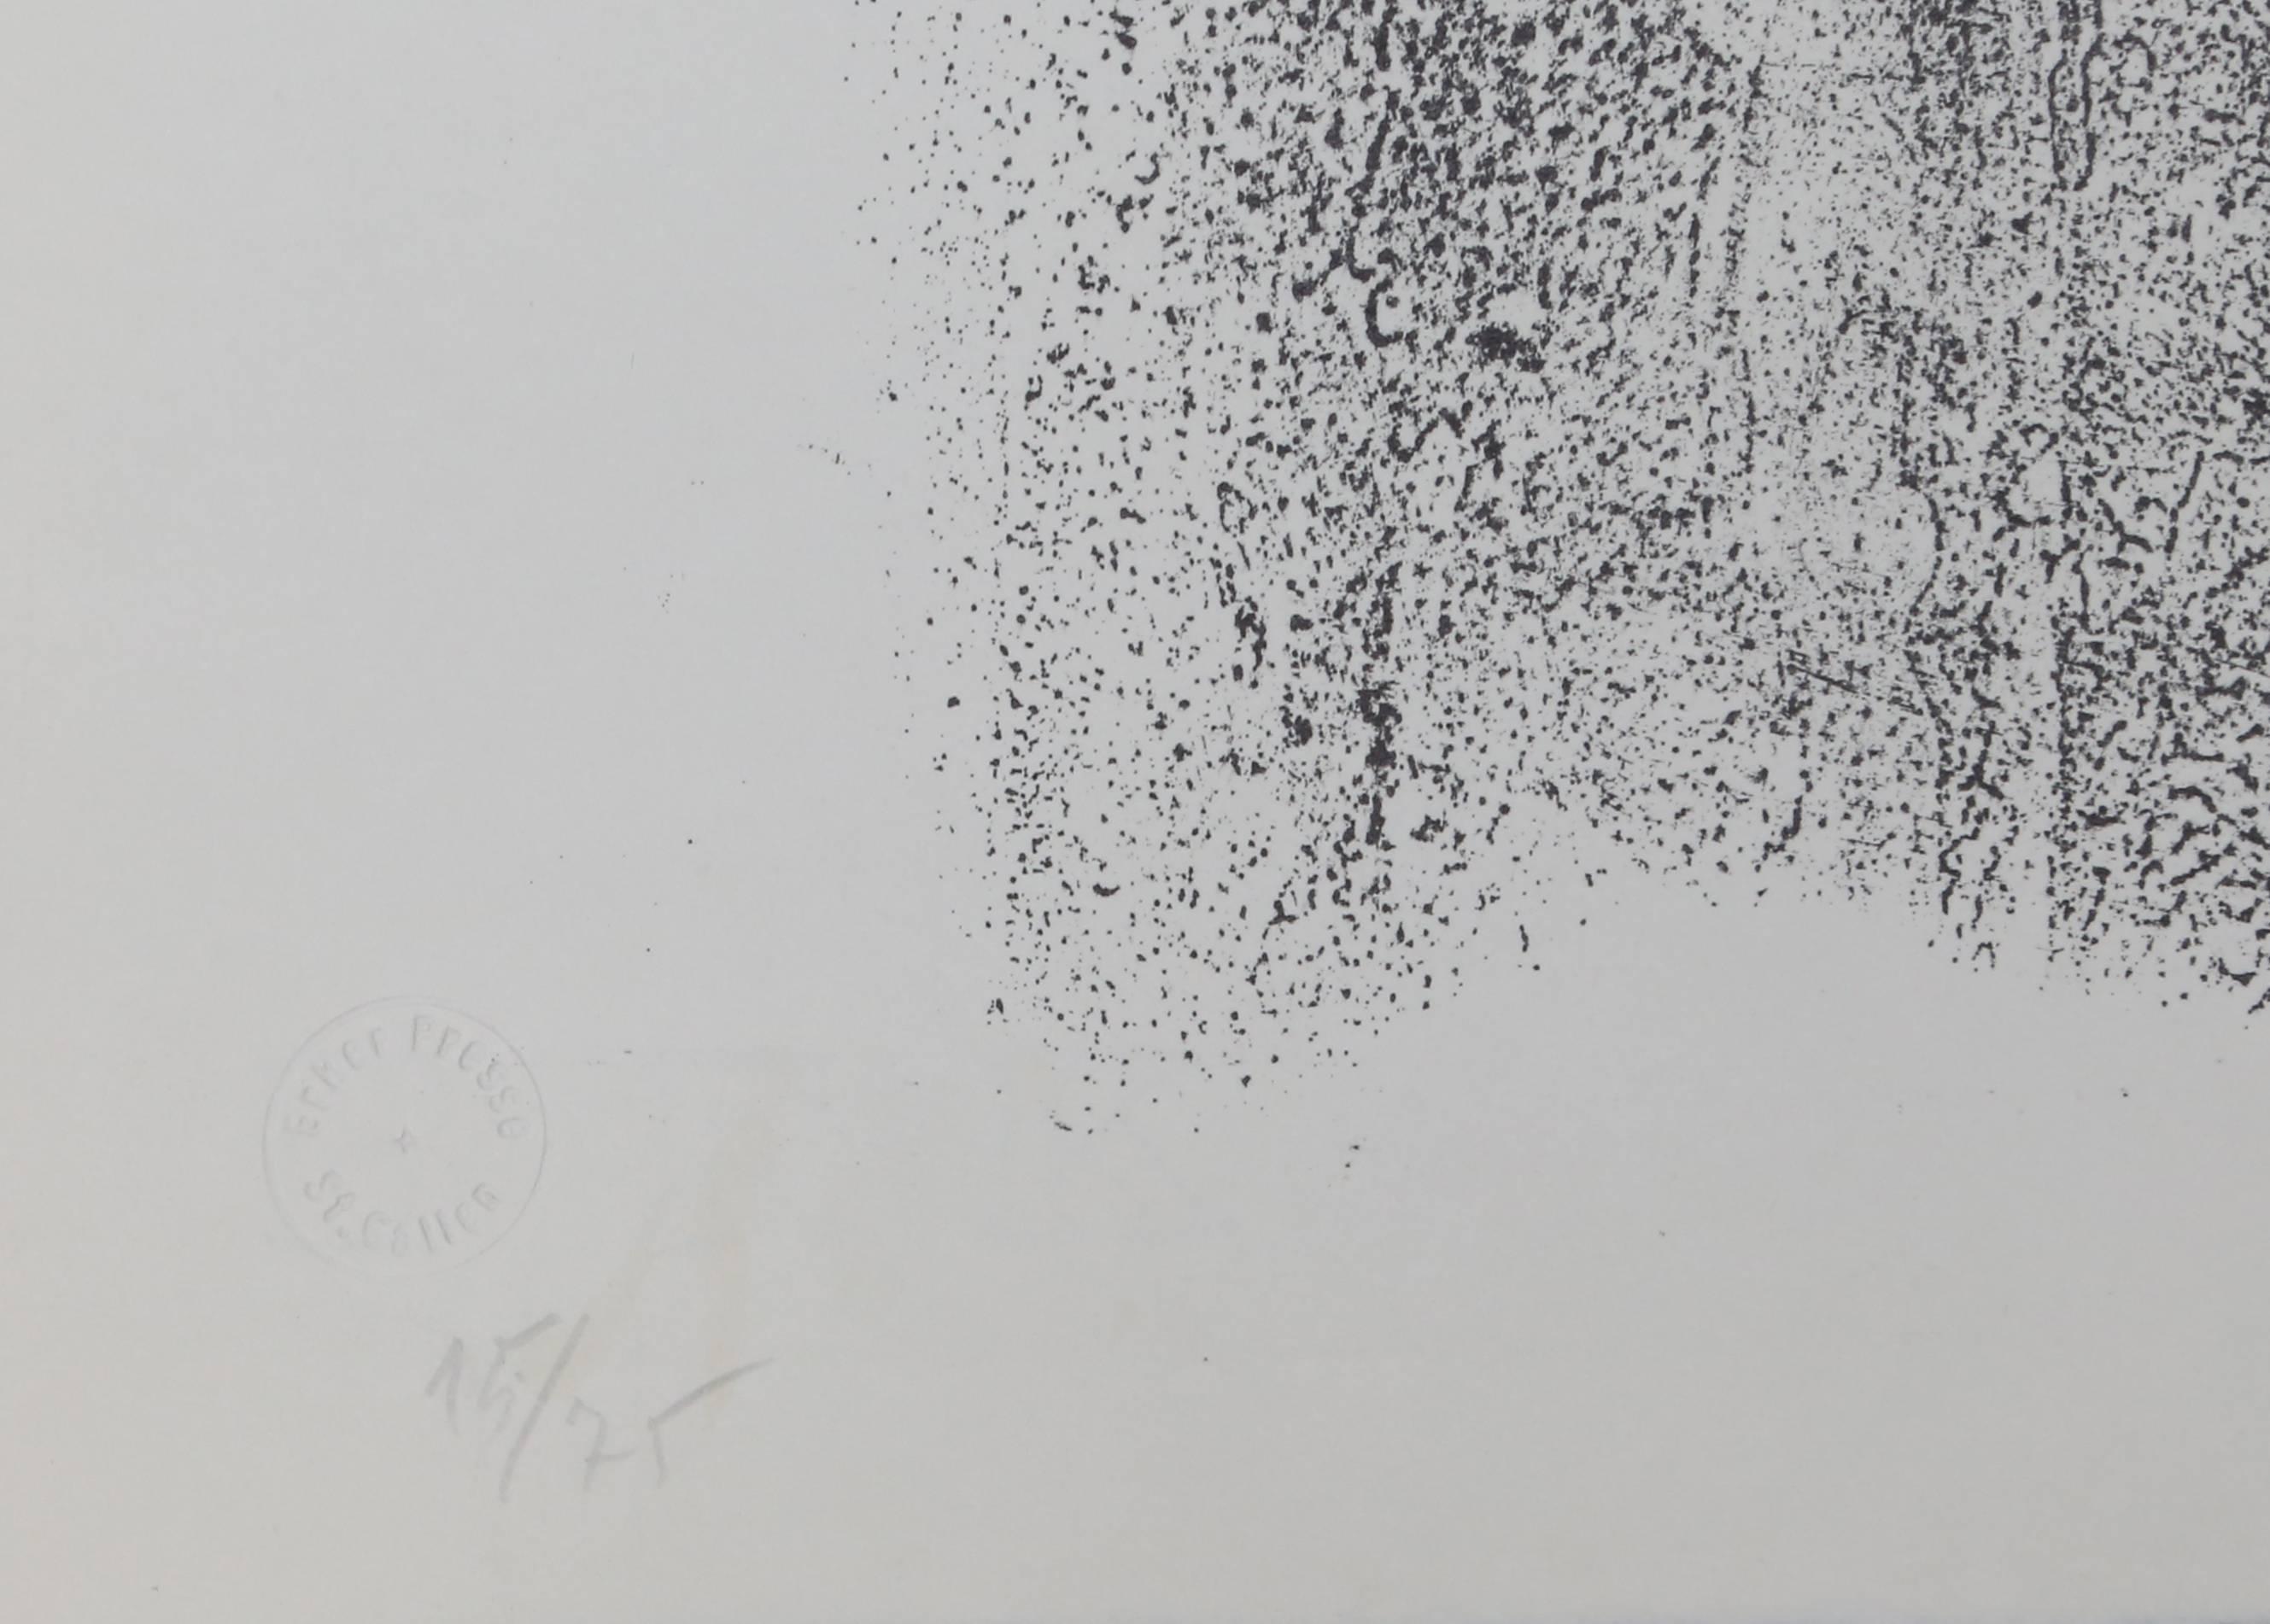 Abstrakte expressionistische Lithographie ohne Titel aus St. Gallen, Antoni Tapies (Abstrakter Expressionismus), Print, von Antoni Tàpies